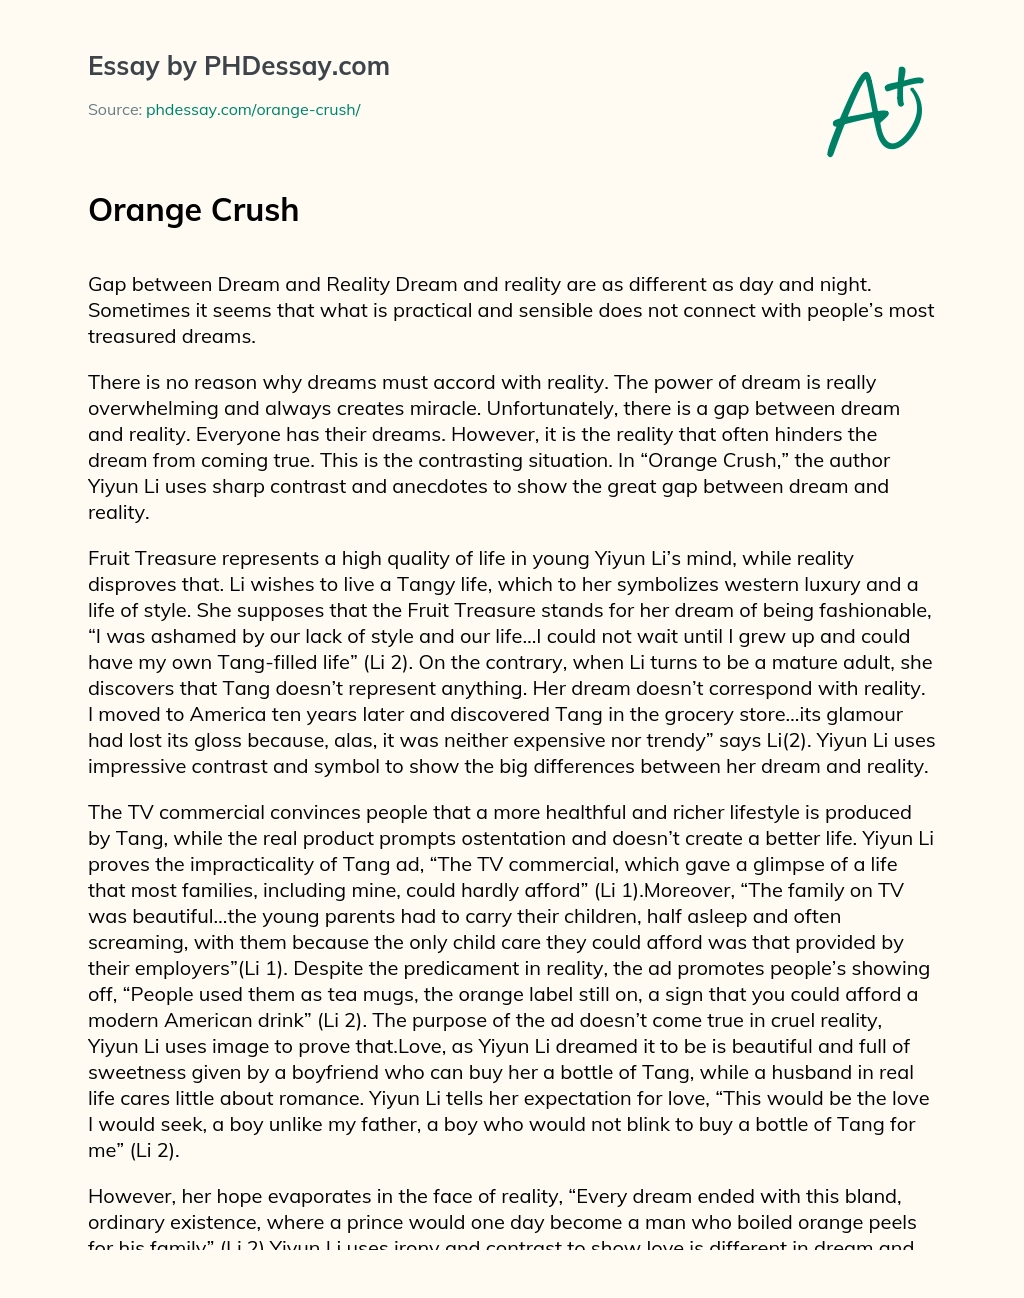 Orange Crush essay